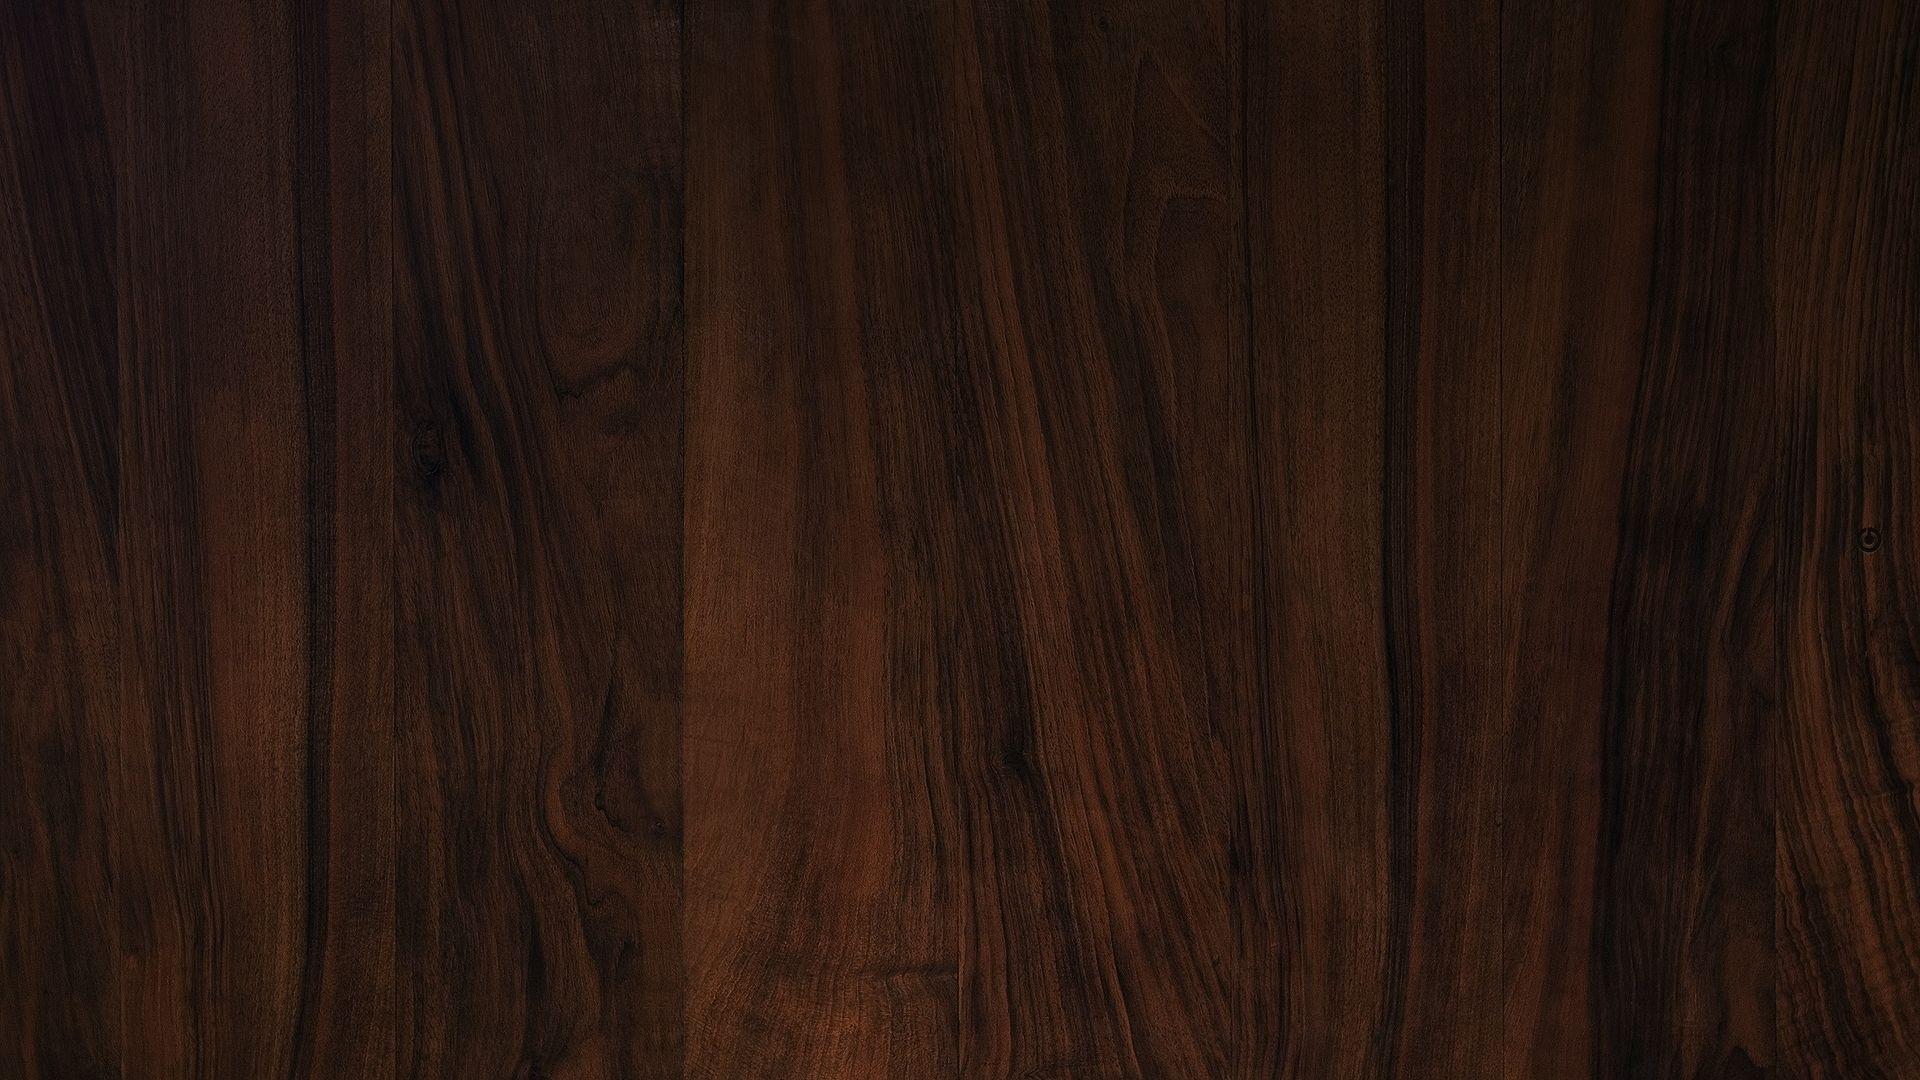 Hình nền gỗ 1920x1080 Elegant: Tải xuống miễn phí, Mượn và Truyền trực tuyến